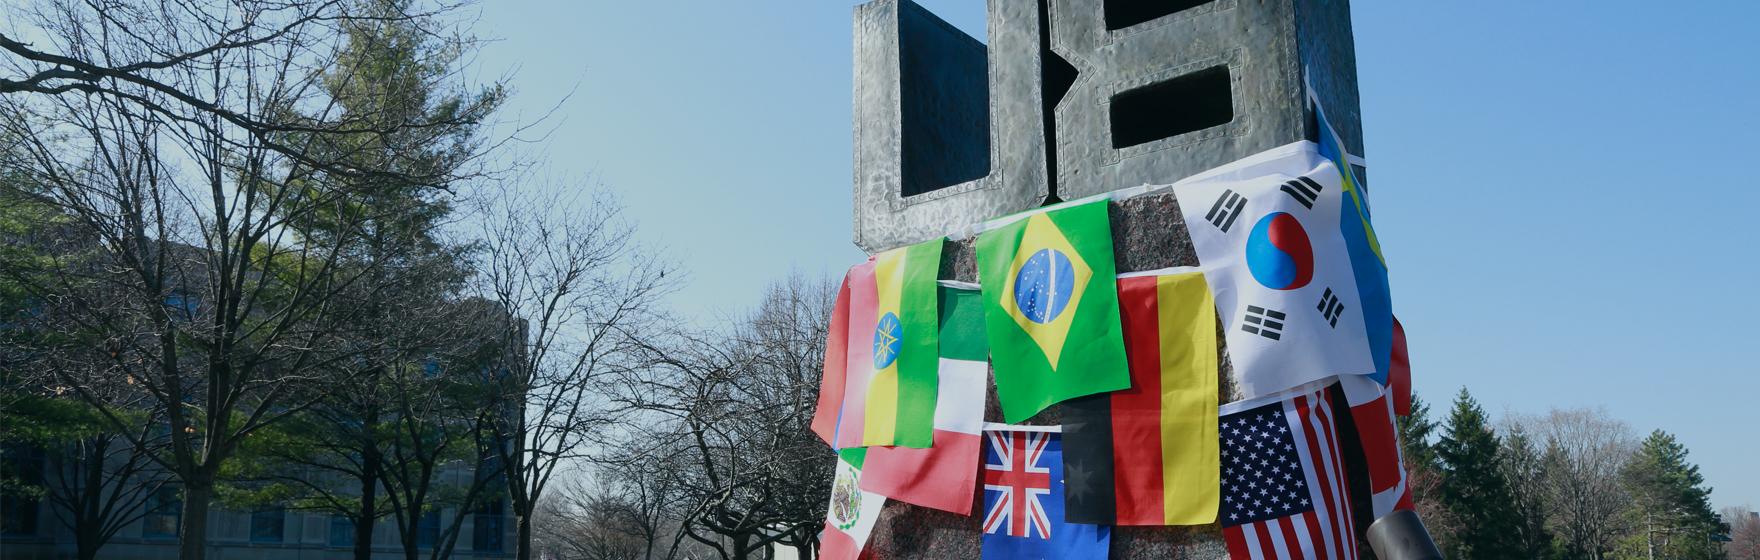 亚洲博彩平台排名的雕像和旗帜